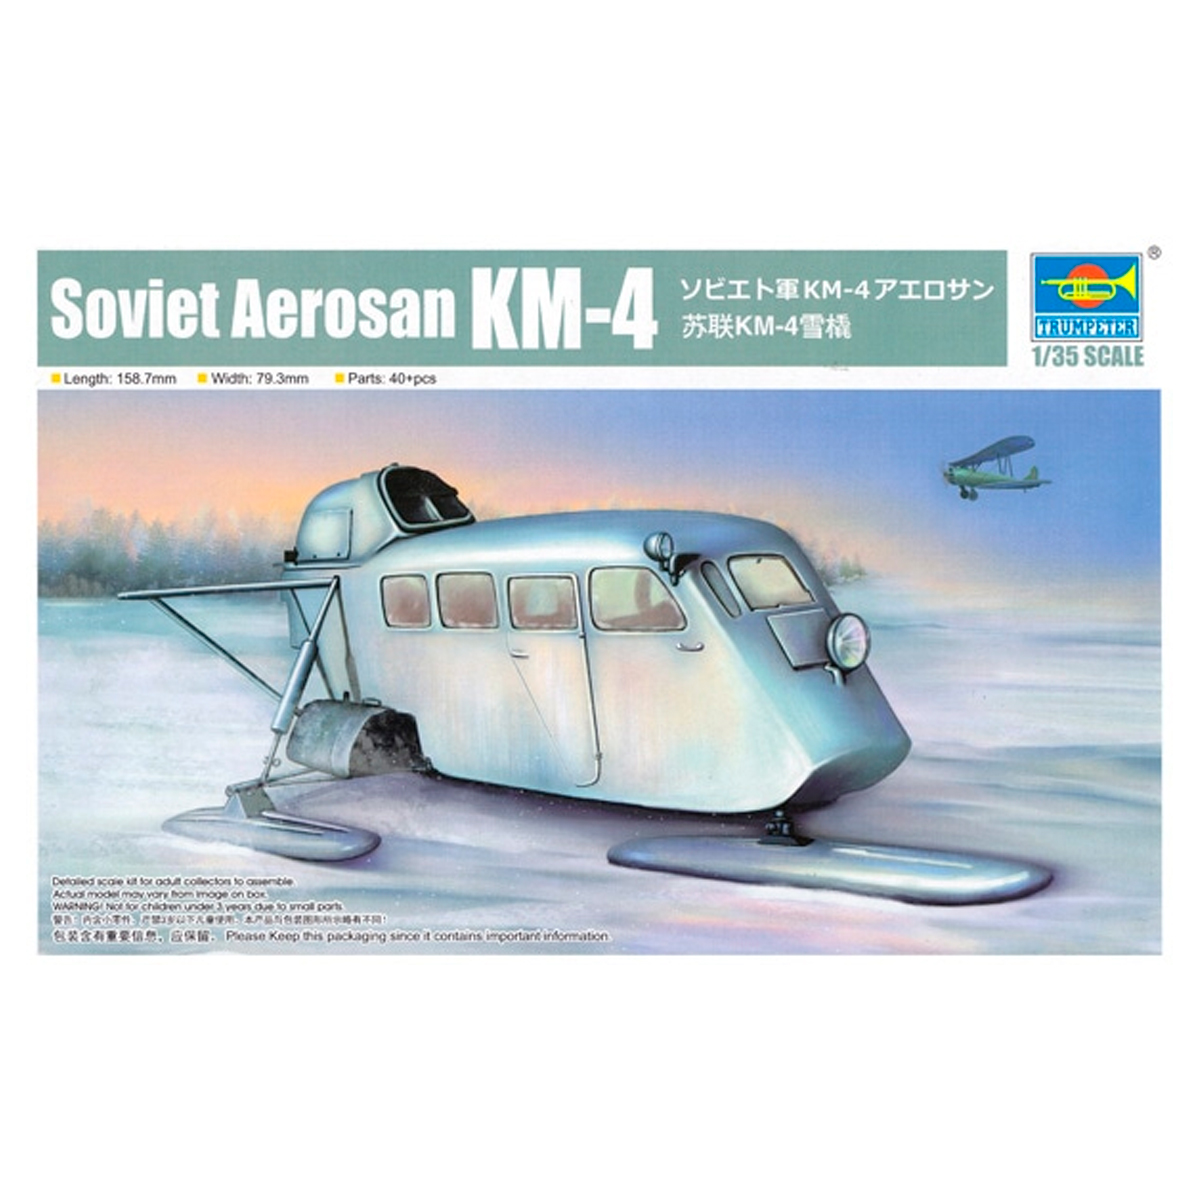 Soviet Aerosan KM-4 1/35